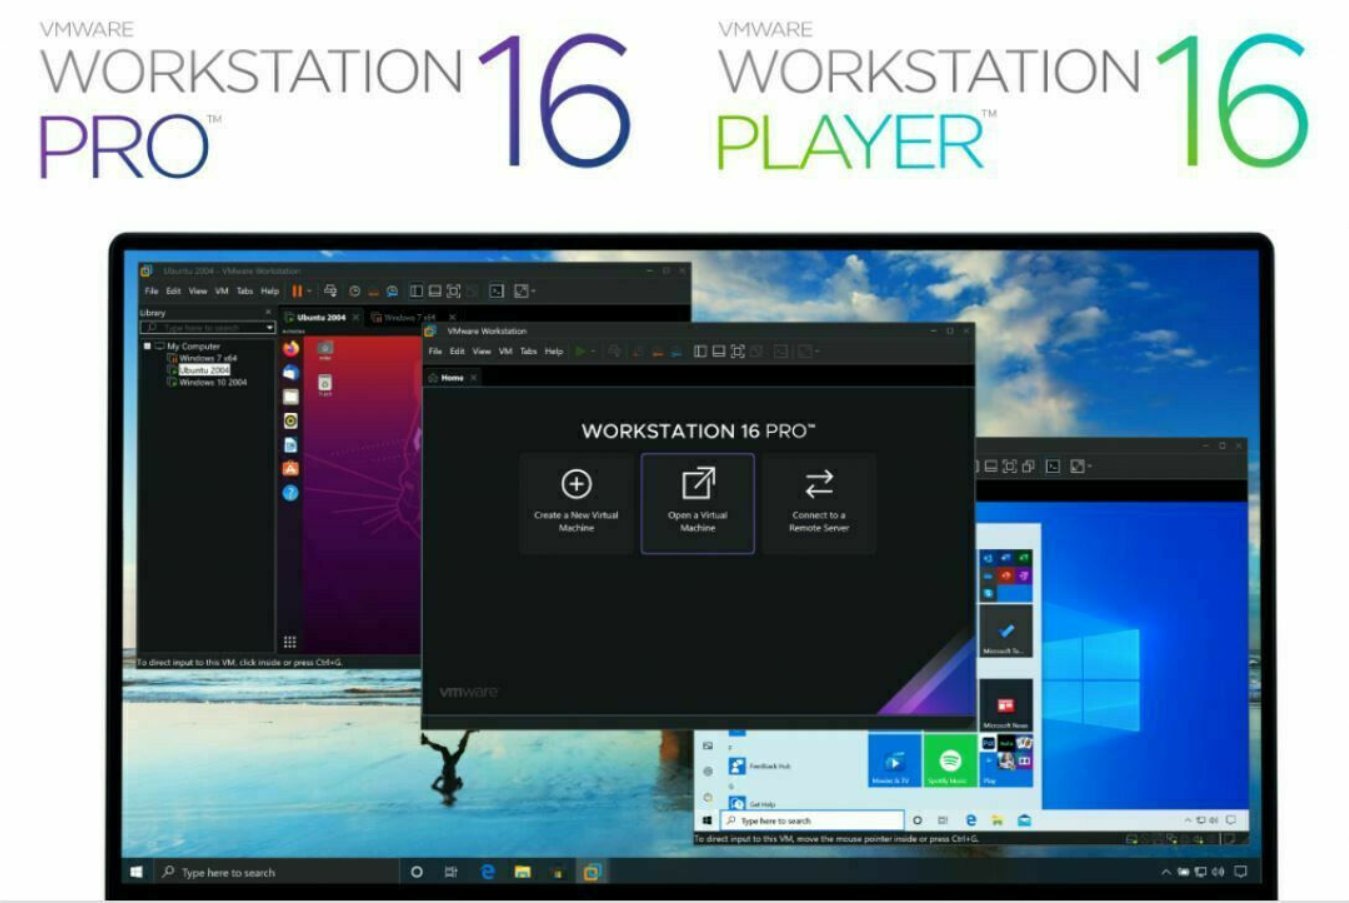 vmware workstation pro download 16